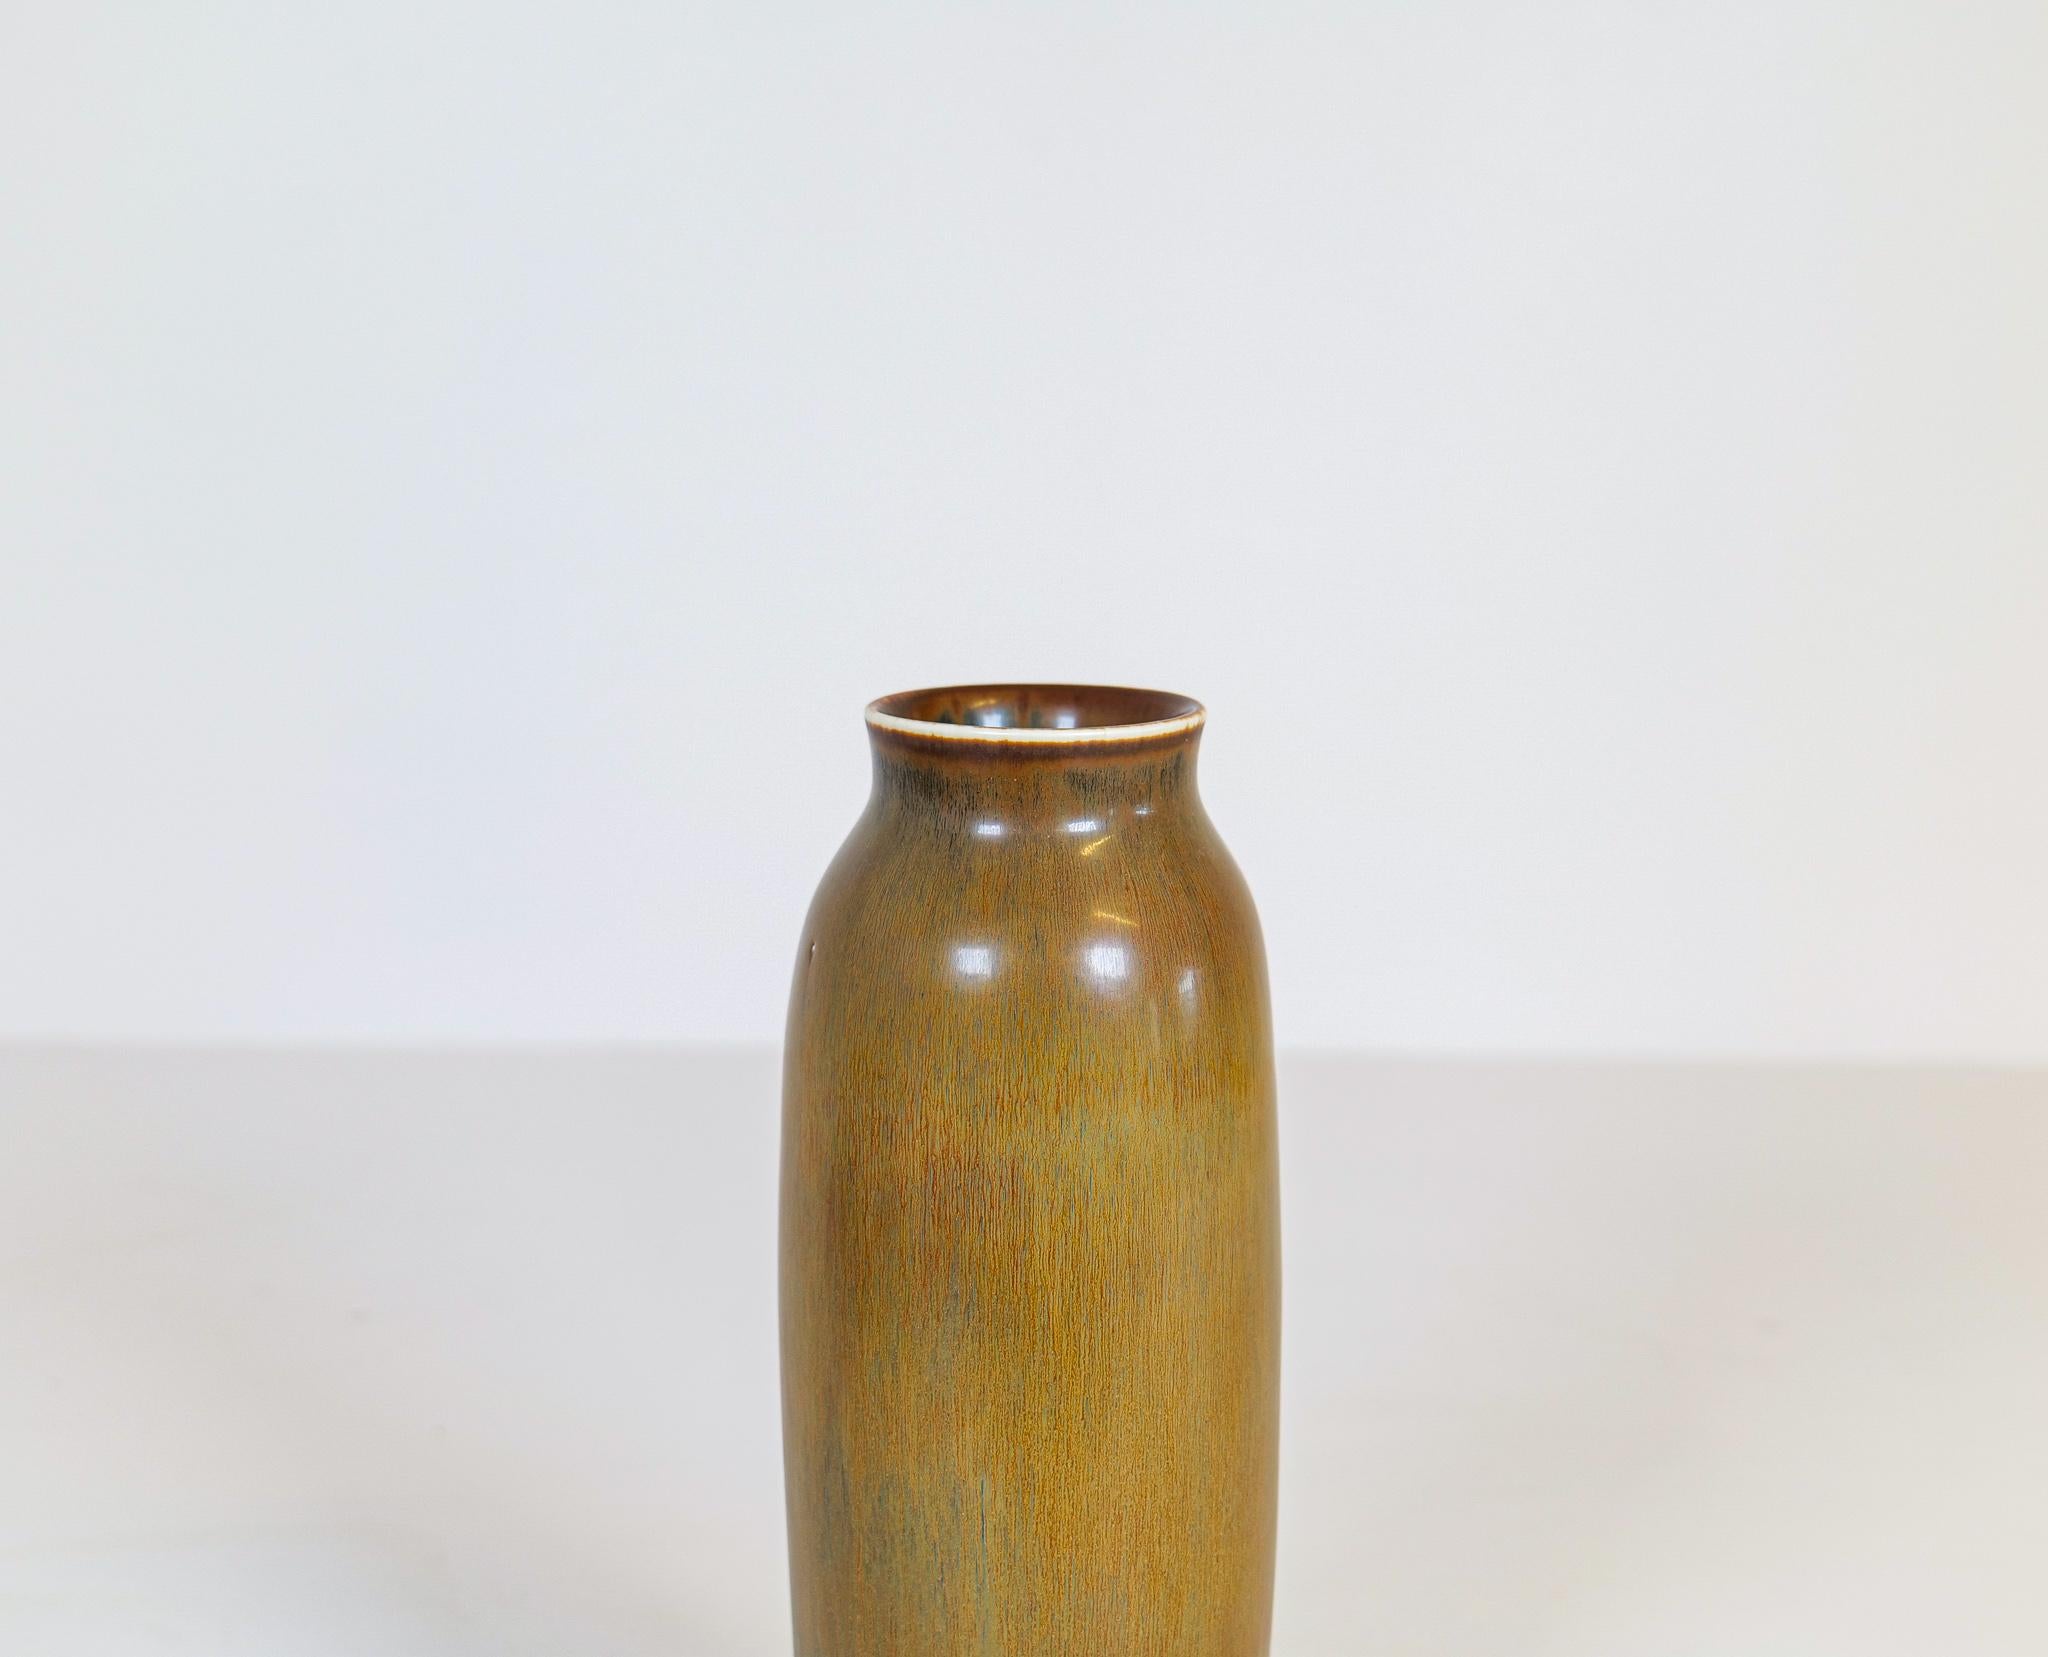 Mid-20th Century Midcentury Modern Ceramic Vase Carl-Harry Stålhane for Rörstrand, Sweden For Sale